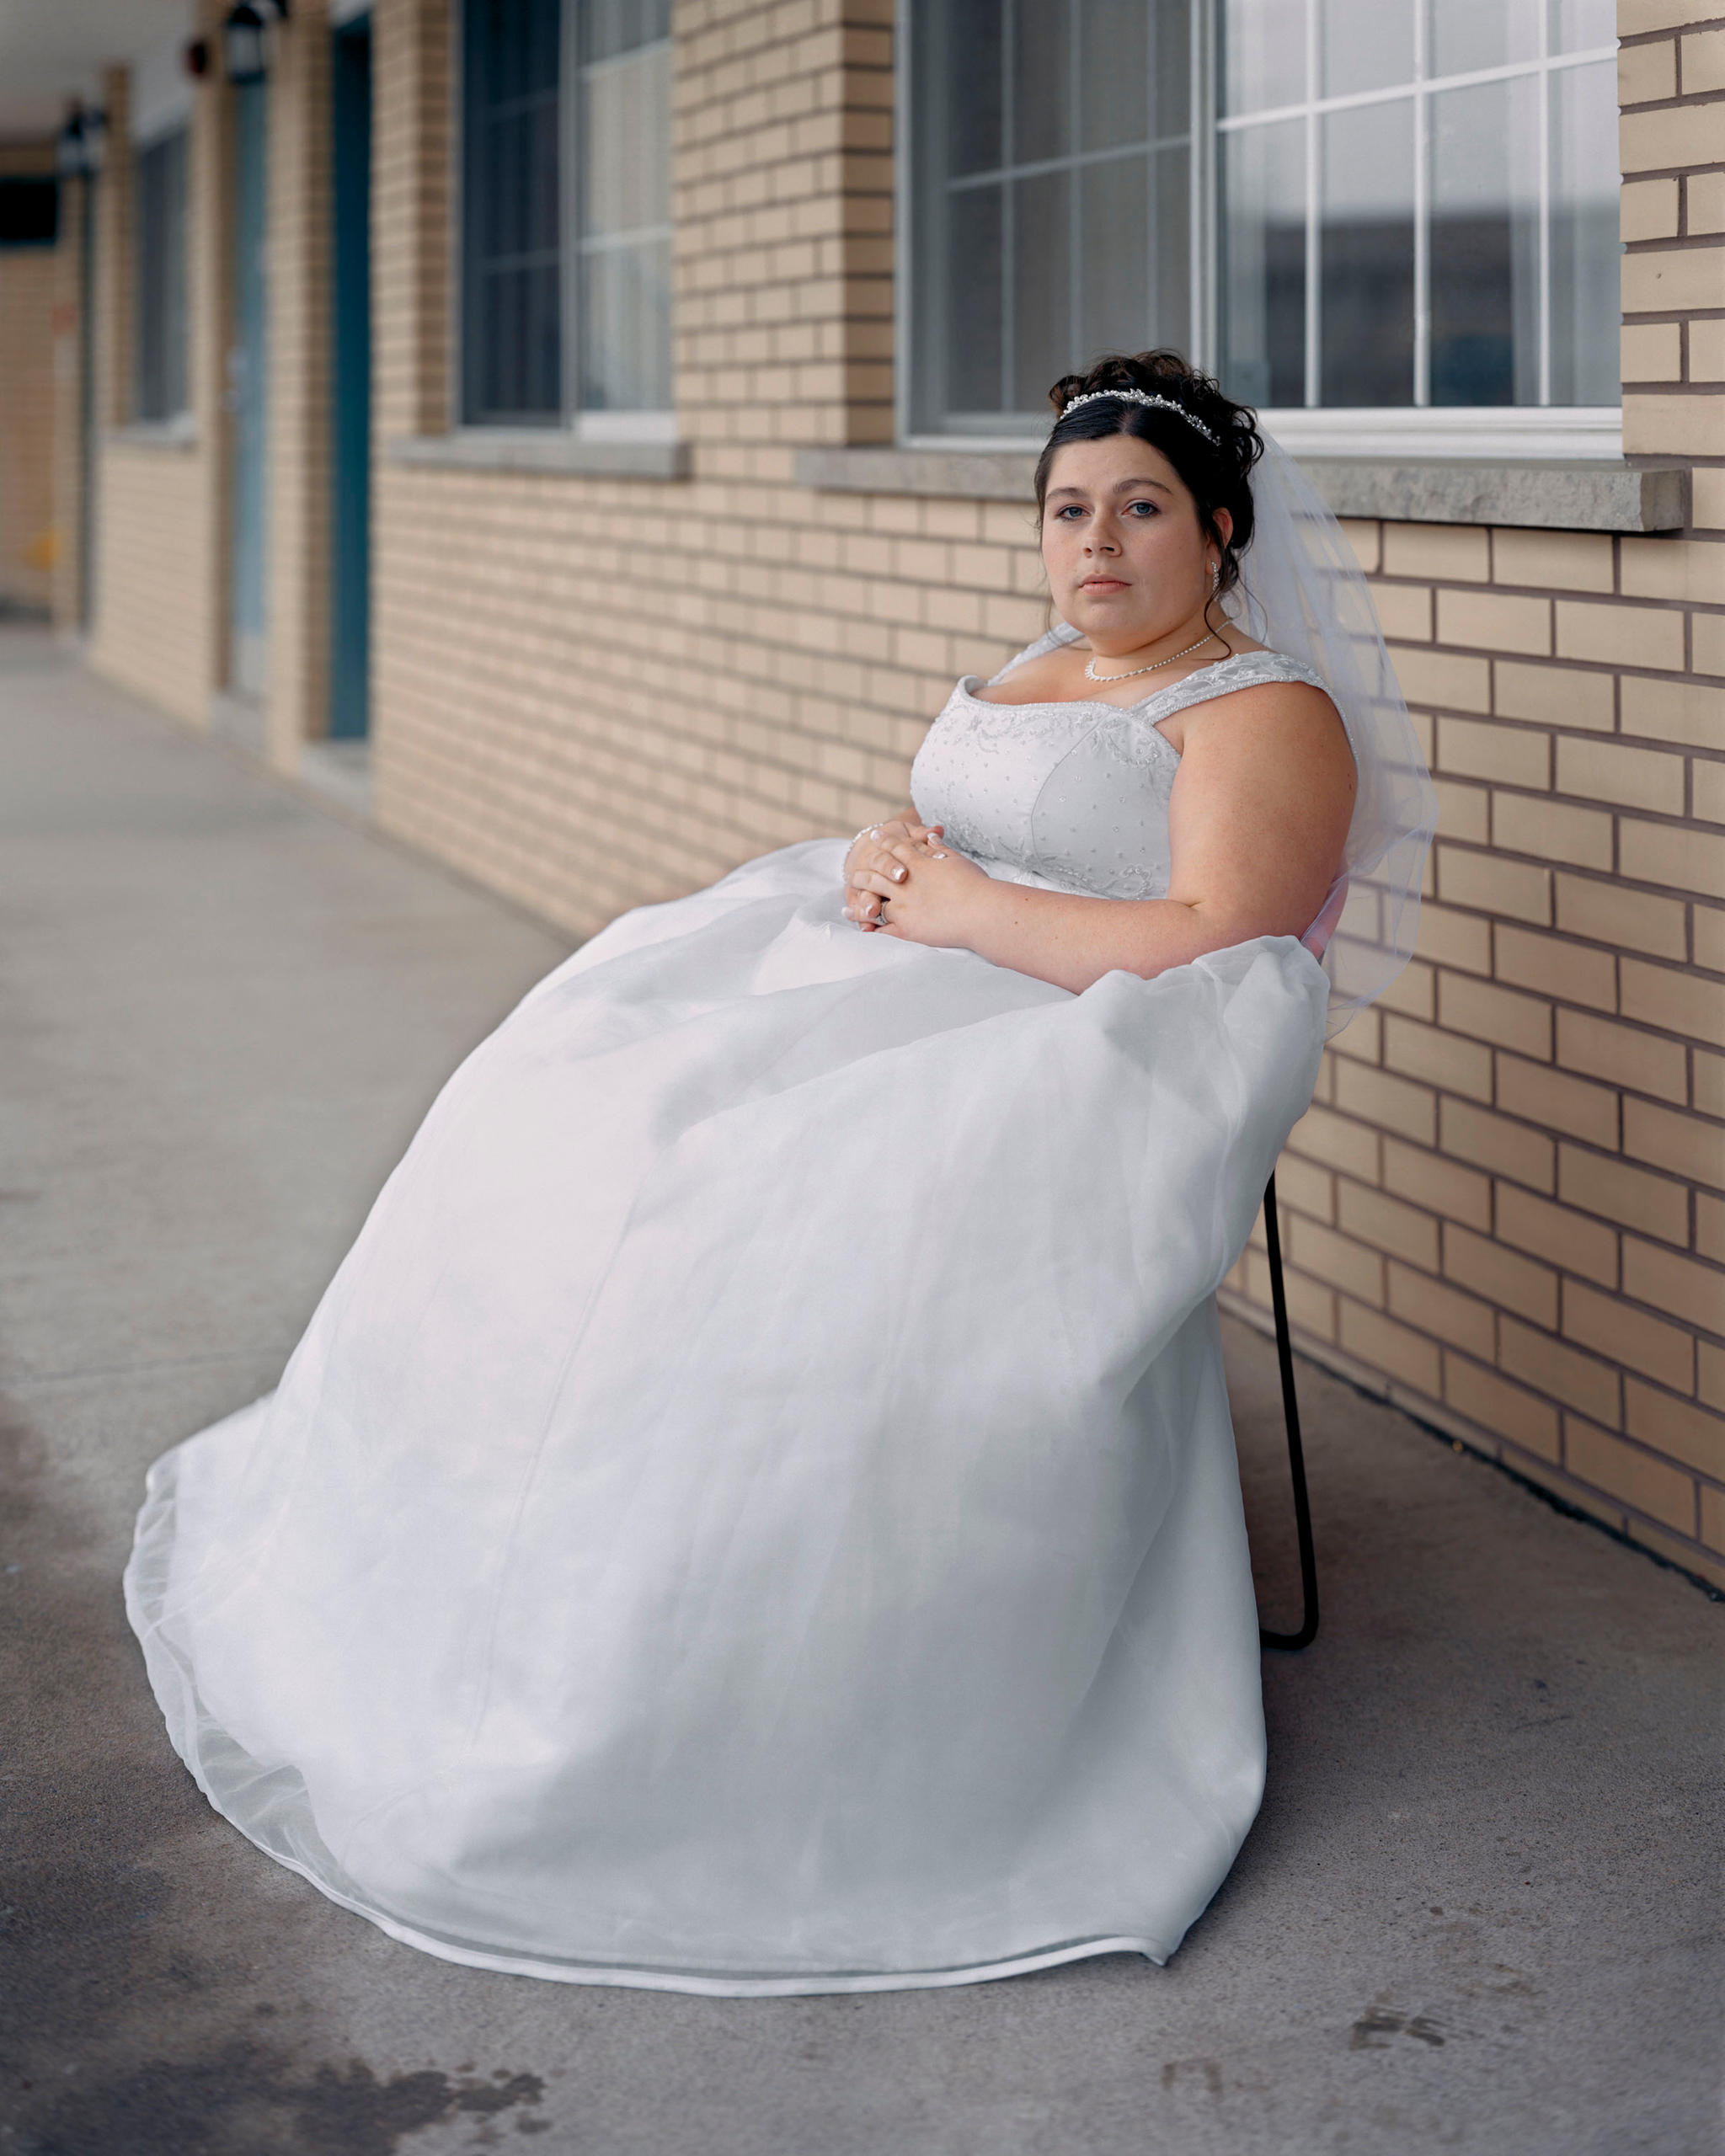 Frau in Hochzeitskleid auf einem Stuhl